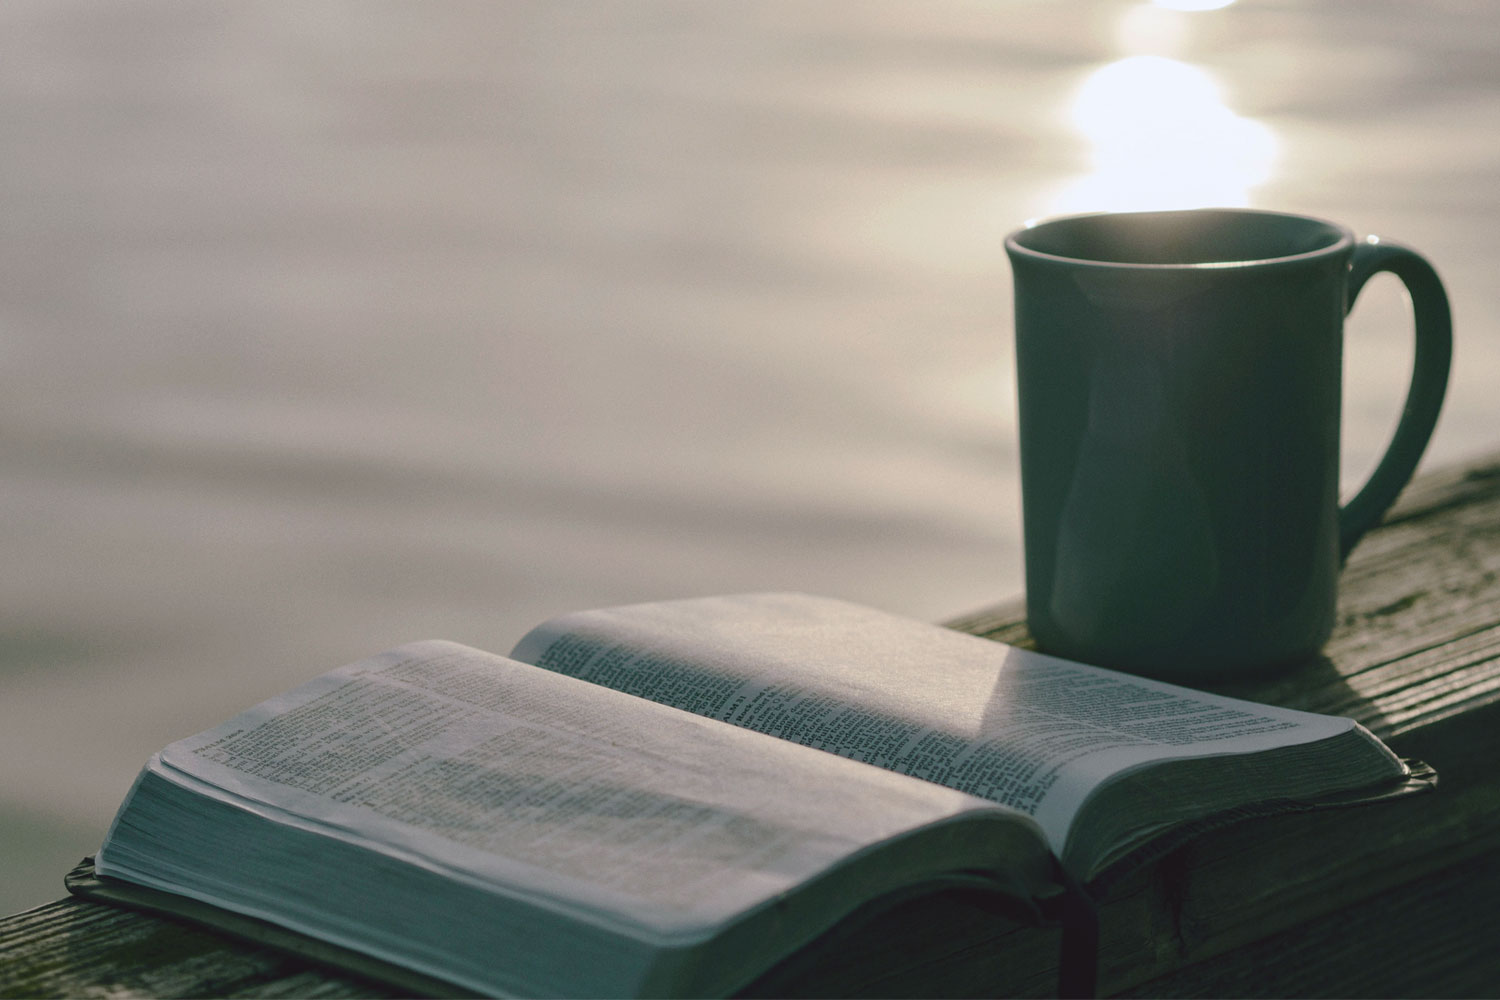 bible with coffee mug